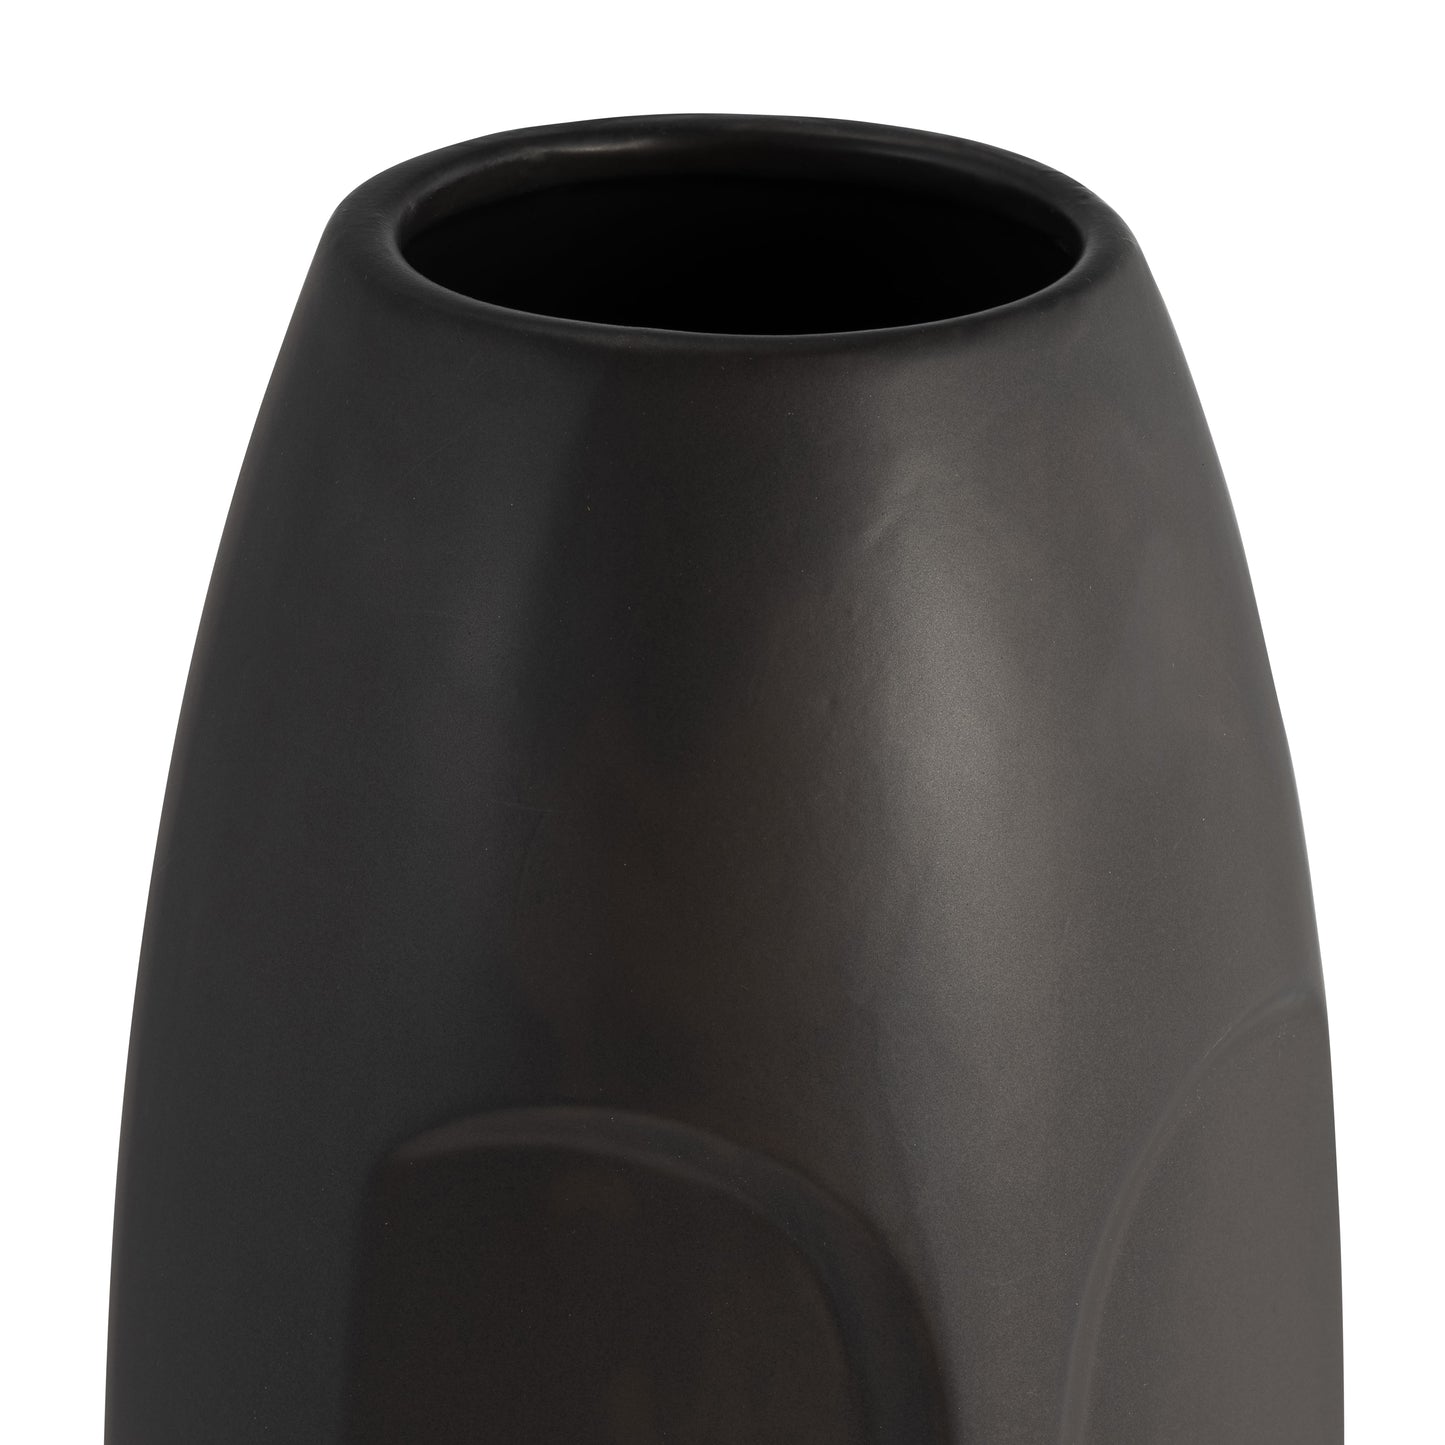 Janus Black Ceramic Vase 14"